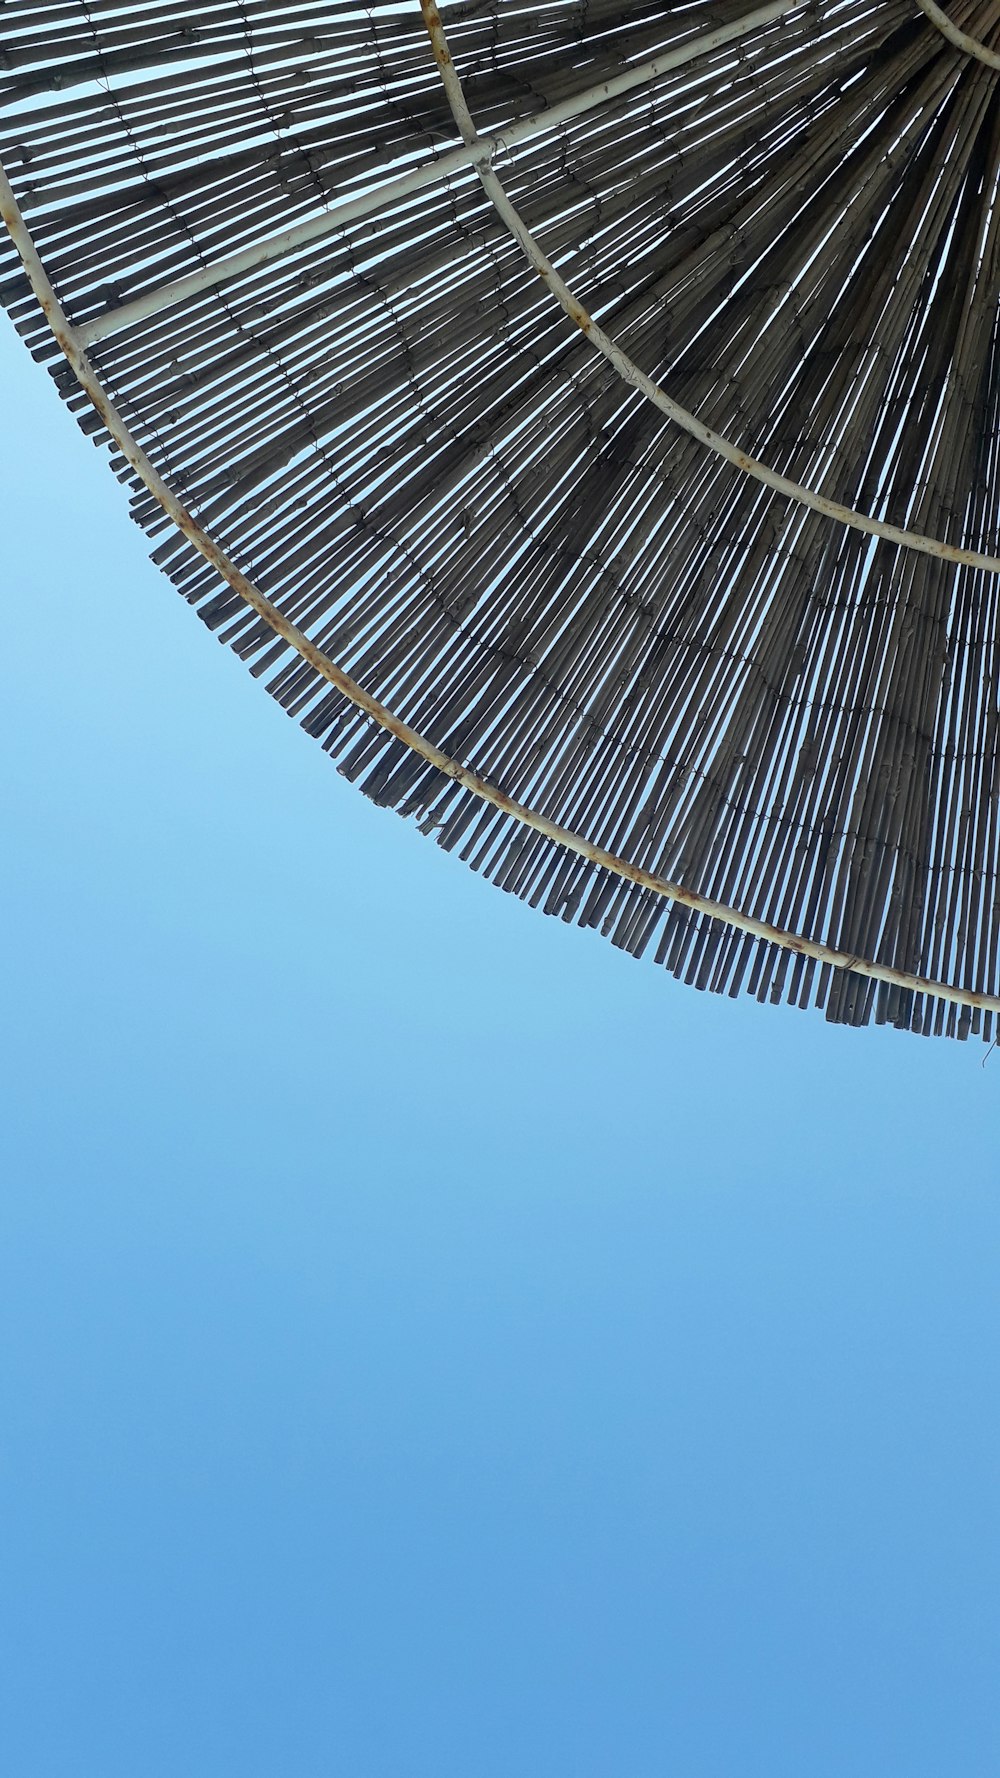 a close up of a straw umbrella against a blue sky